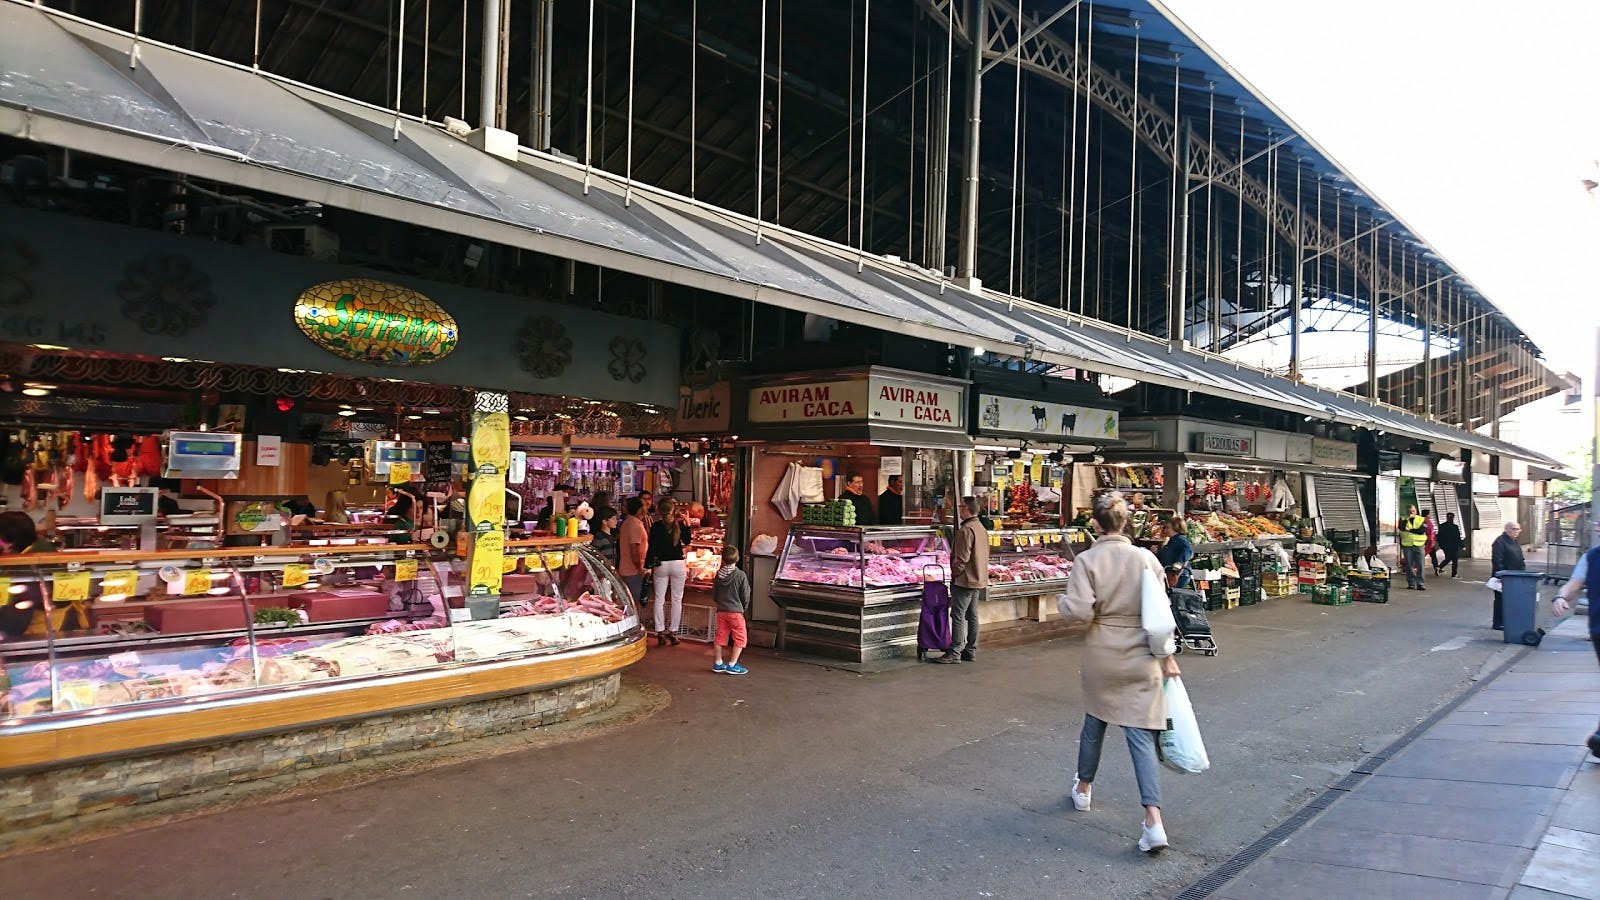 Image - Mercado de La Boqueria